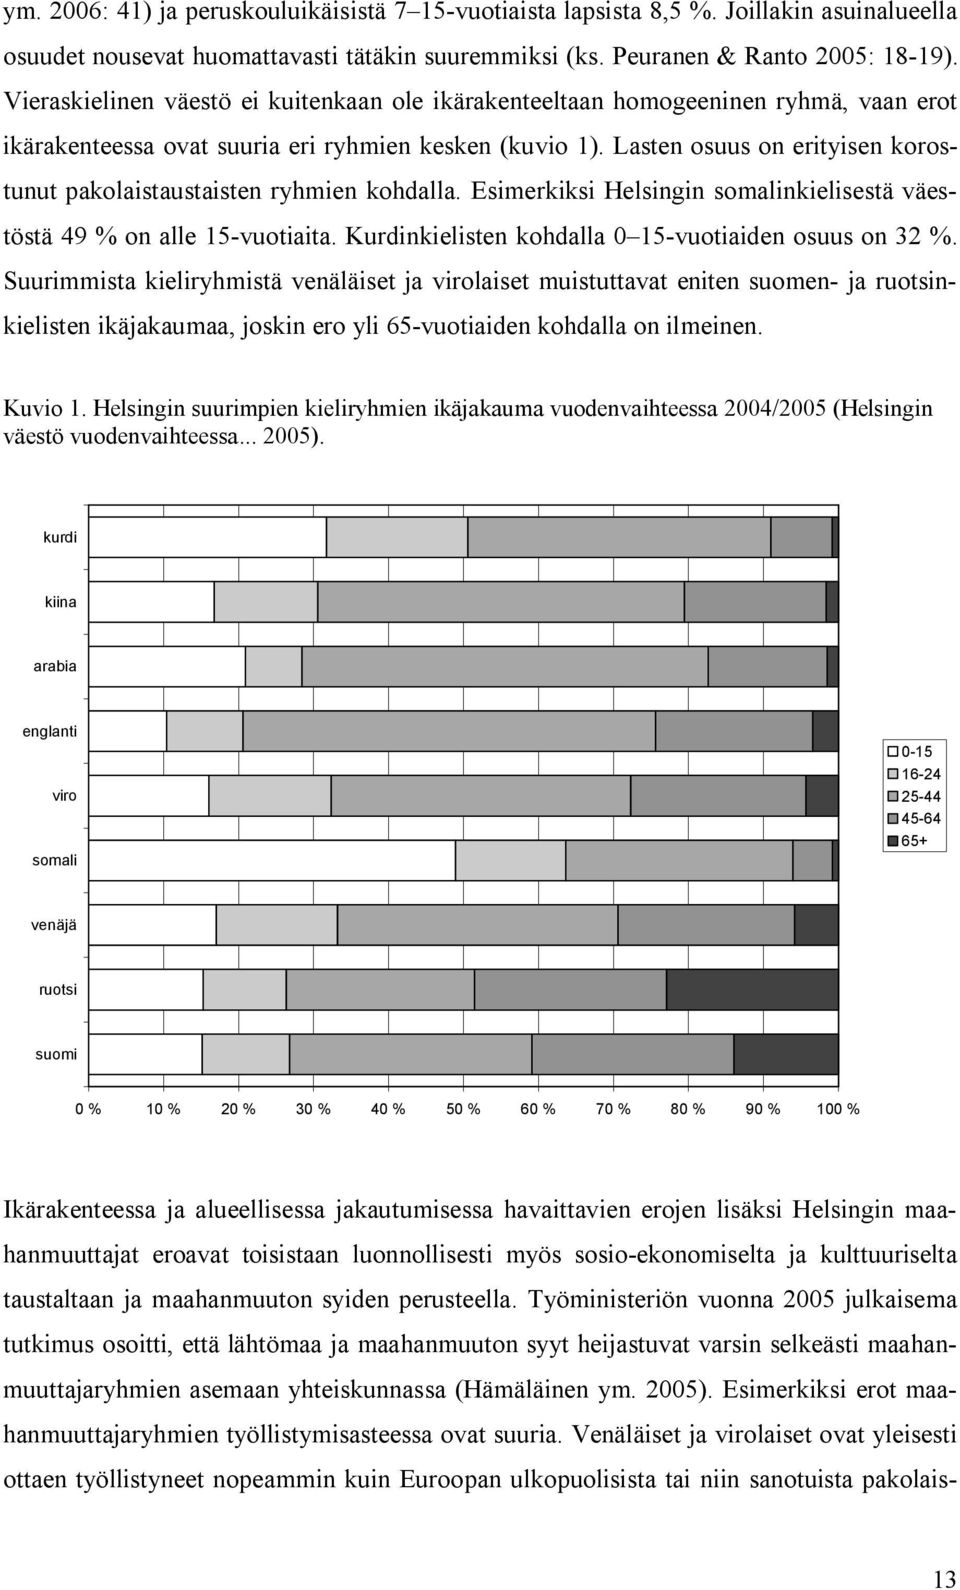 Lasten osuus on erityisen korostunut pakolaistaustaisten ryhmien kohdalla. Esimerkiksi Helsingin somalinkielisestä väestöstä 49 % on alle 15-vuotiaita.